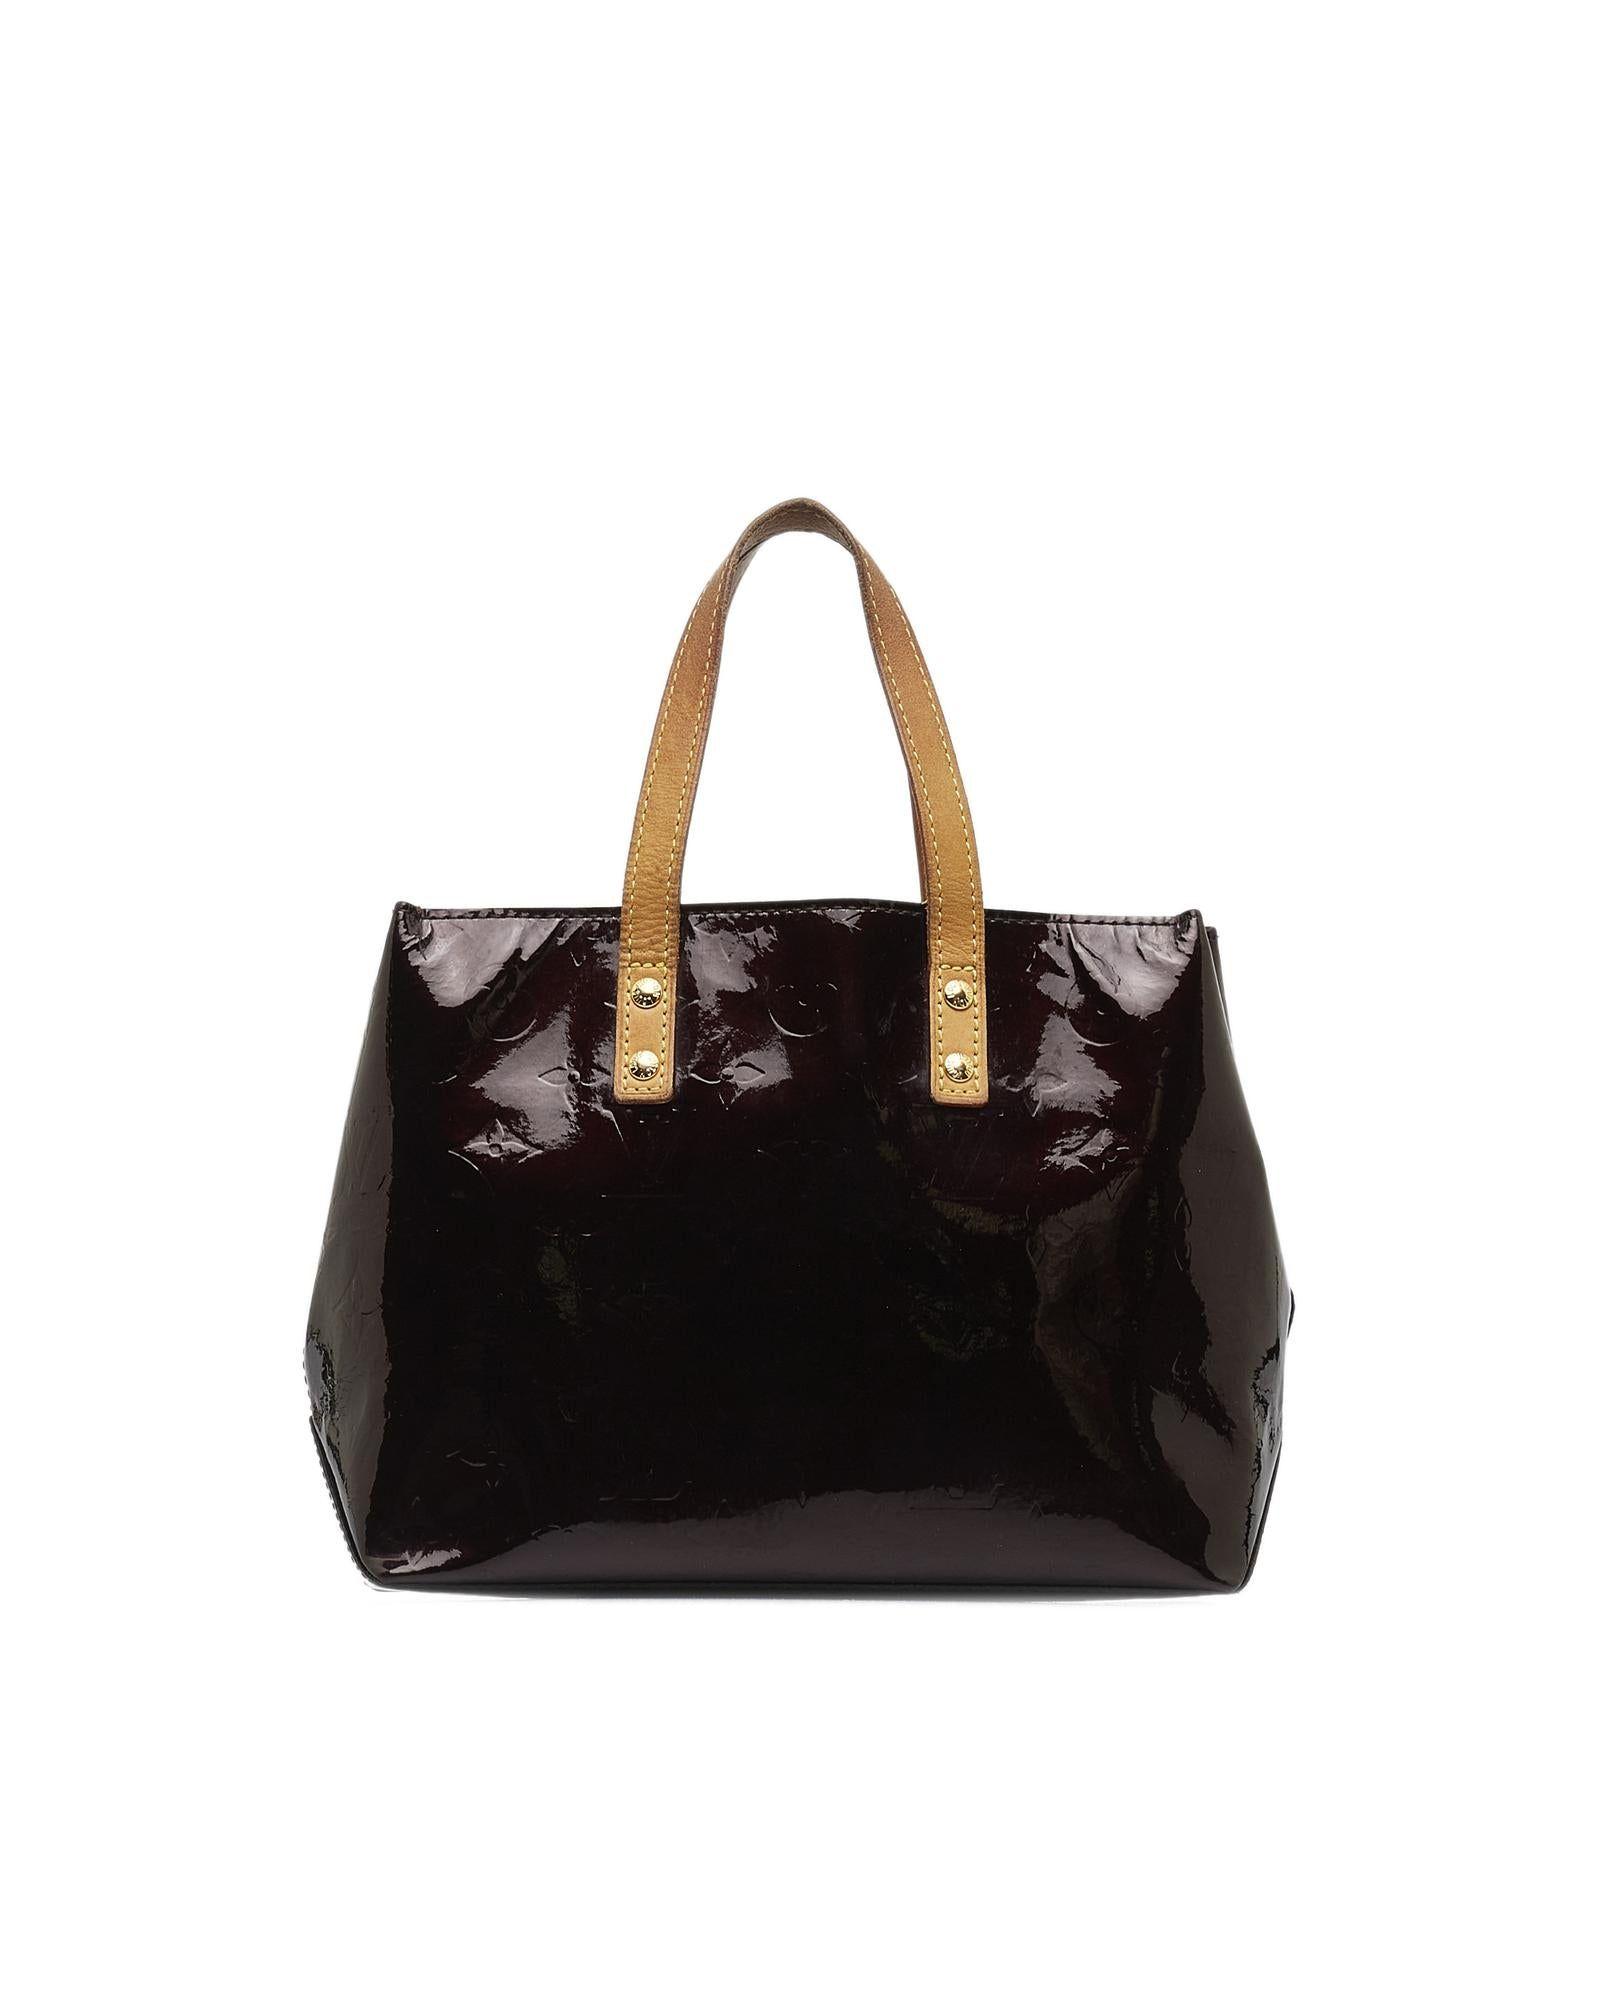 Louis Vuitton Lexington Brown Patent Leather Handbag (Pre-Owned)